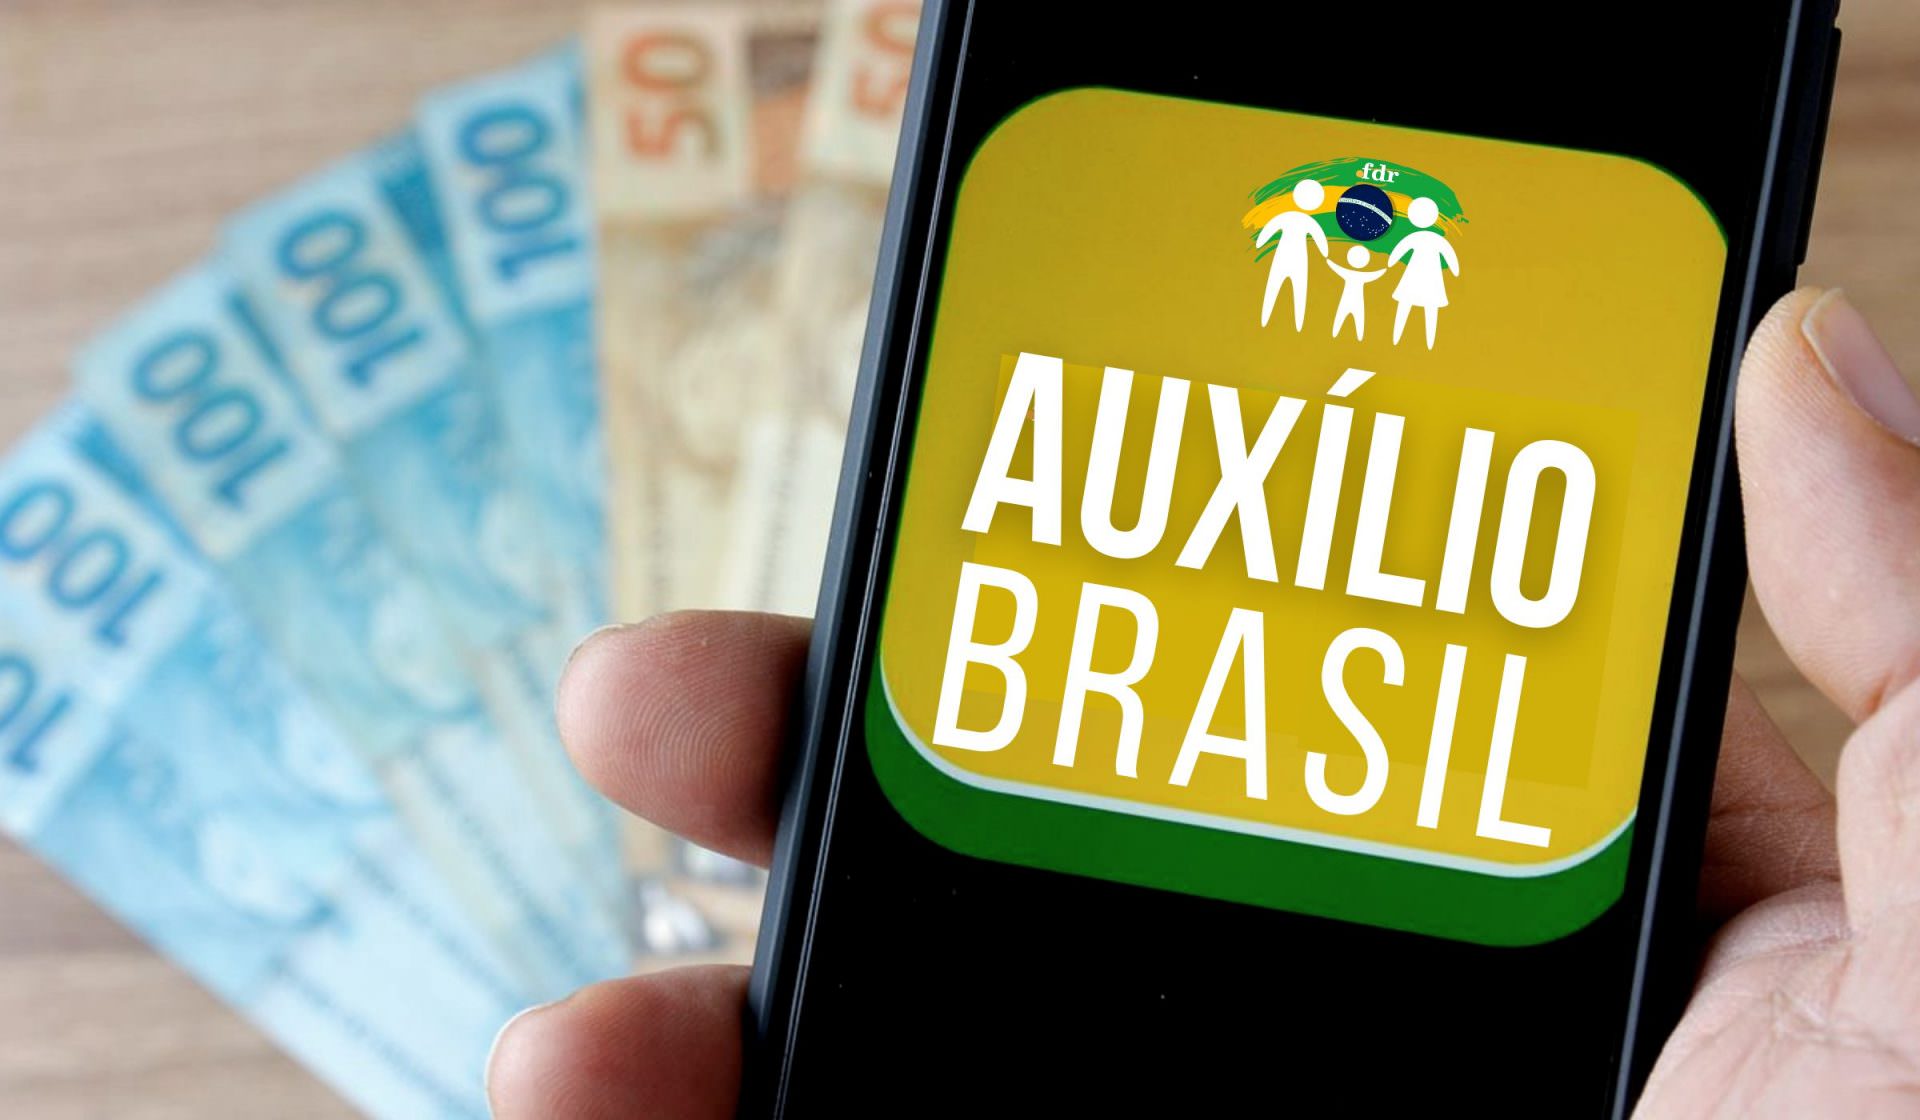 Caixa paga nesta segunda-feira Auxílio Brasil a cadastrados de NIS final 4